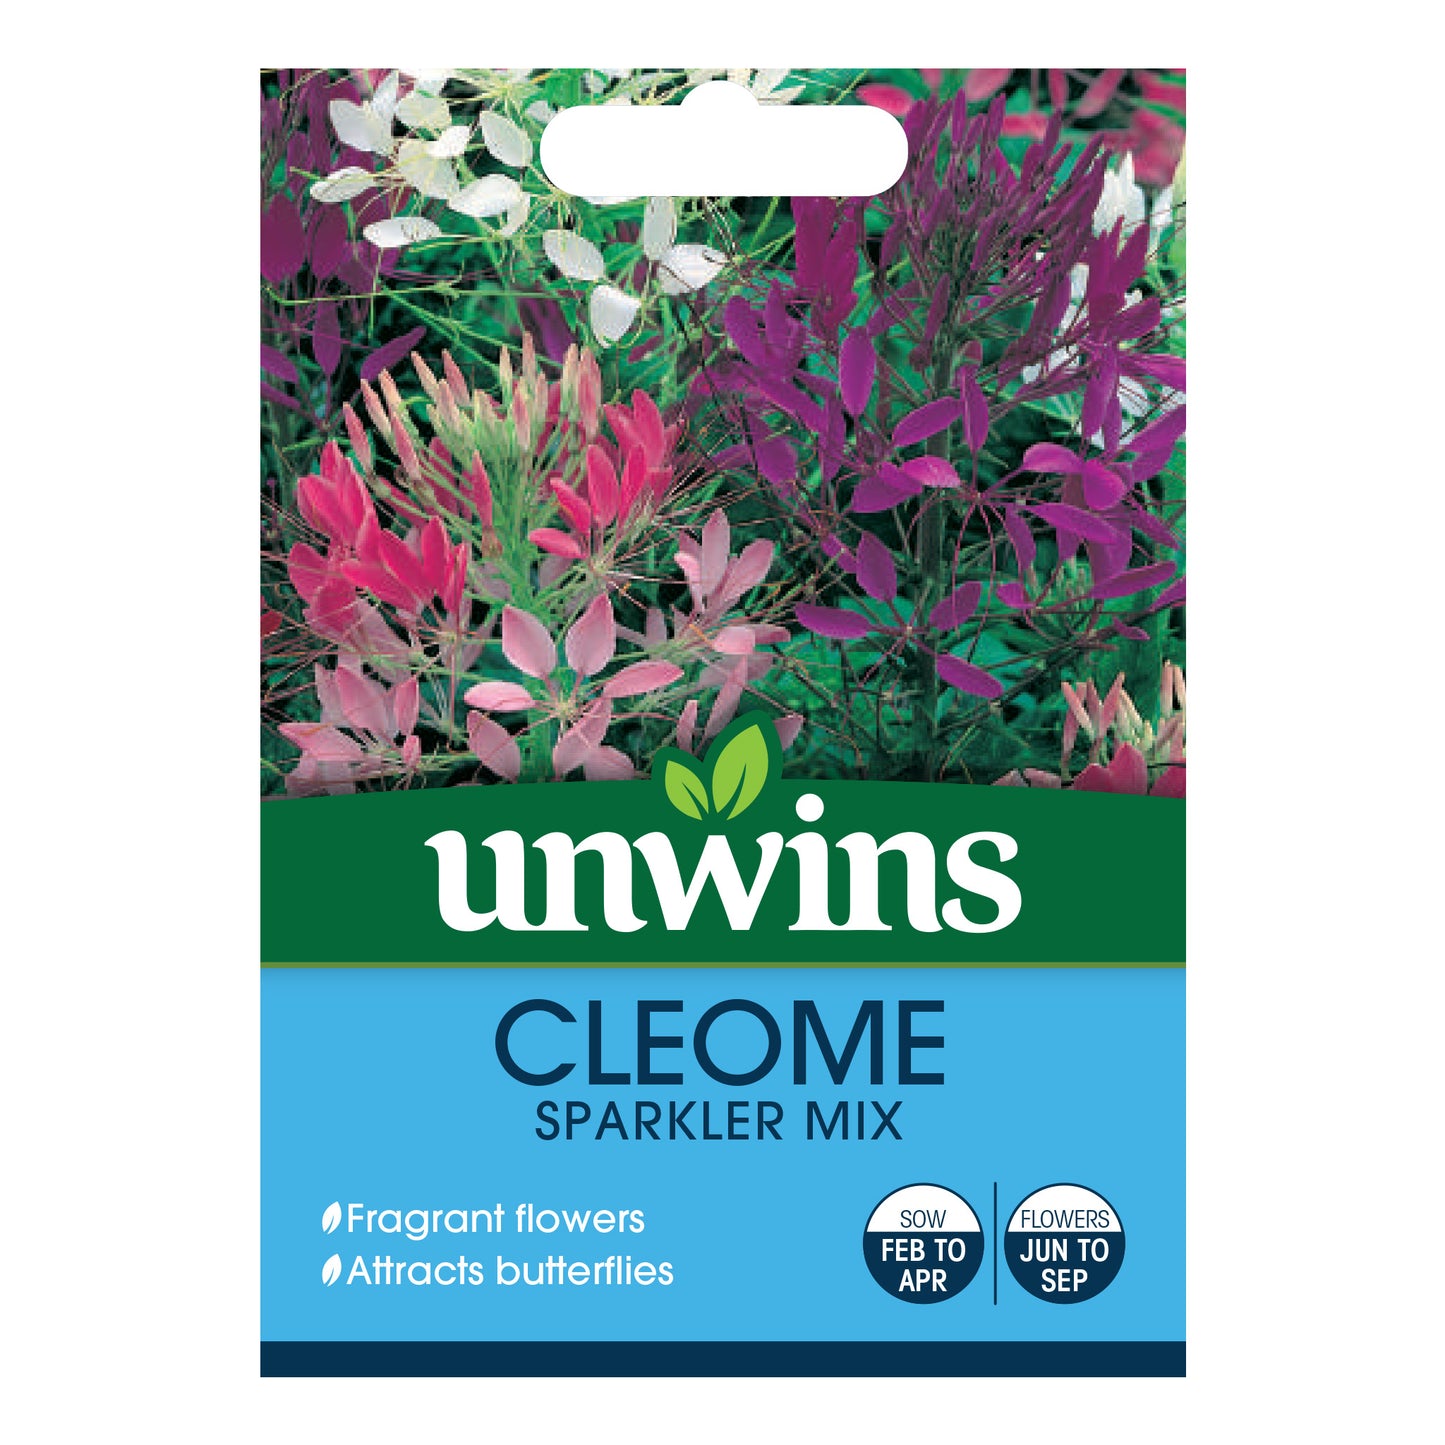 Unwins Cleome Sparkler Mix Seeds front